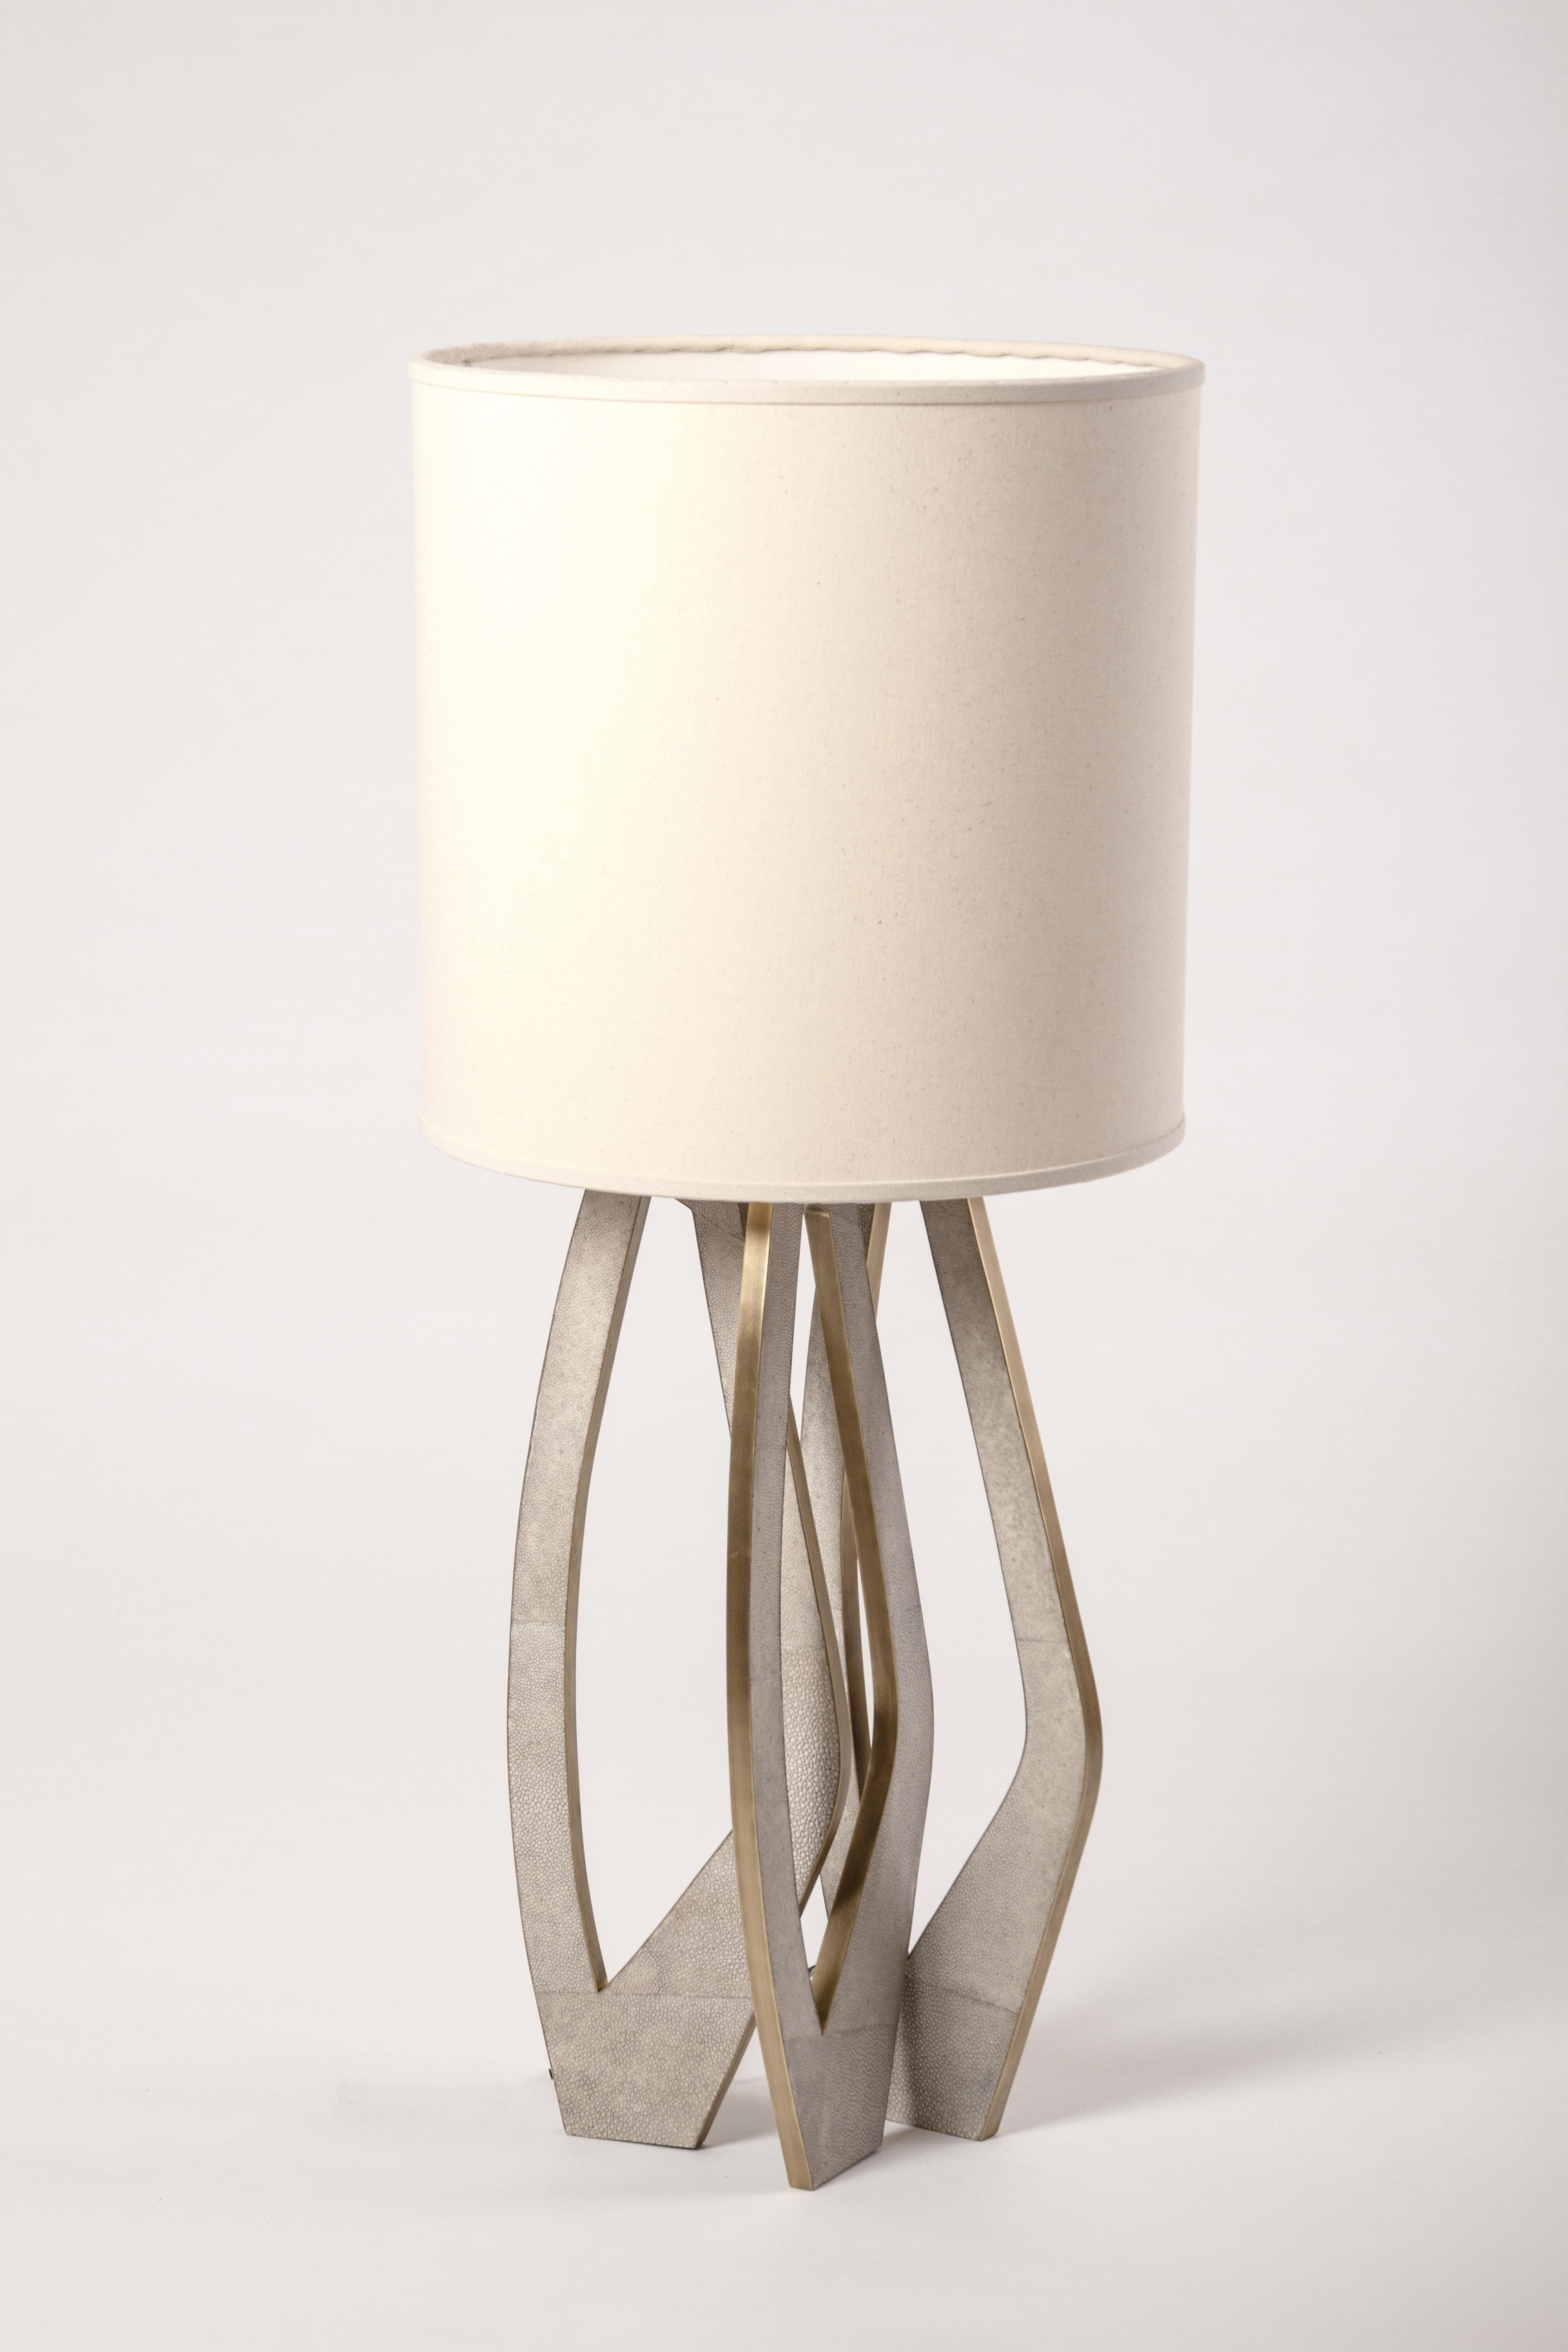 La lampe pétale incrustée de galuchat crème et de laiton patiné bronze de R&Y Augousti est une pièce magnifique avec ses détails découpés complexes et ses pieds incrustés. Abat-jour inclus. Disponible dans d'autres finitions, voir les images à la